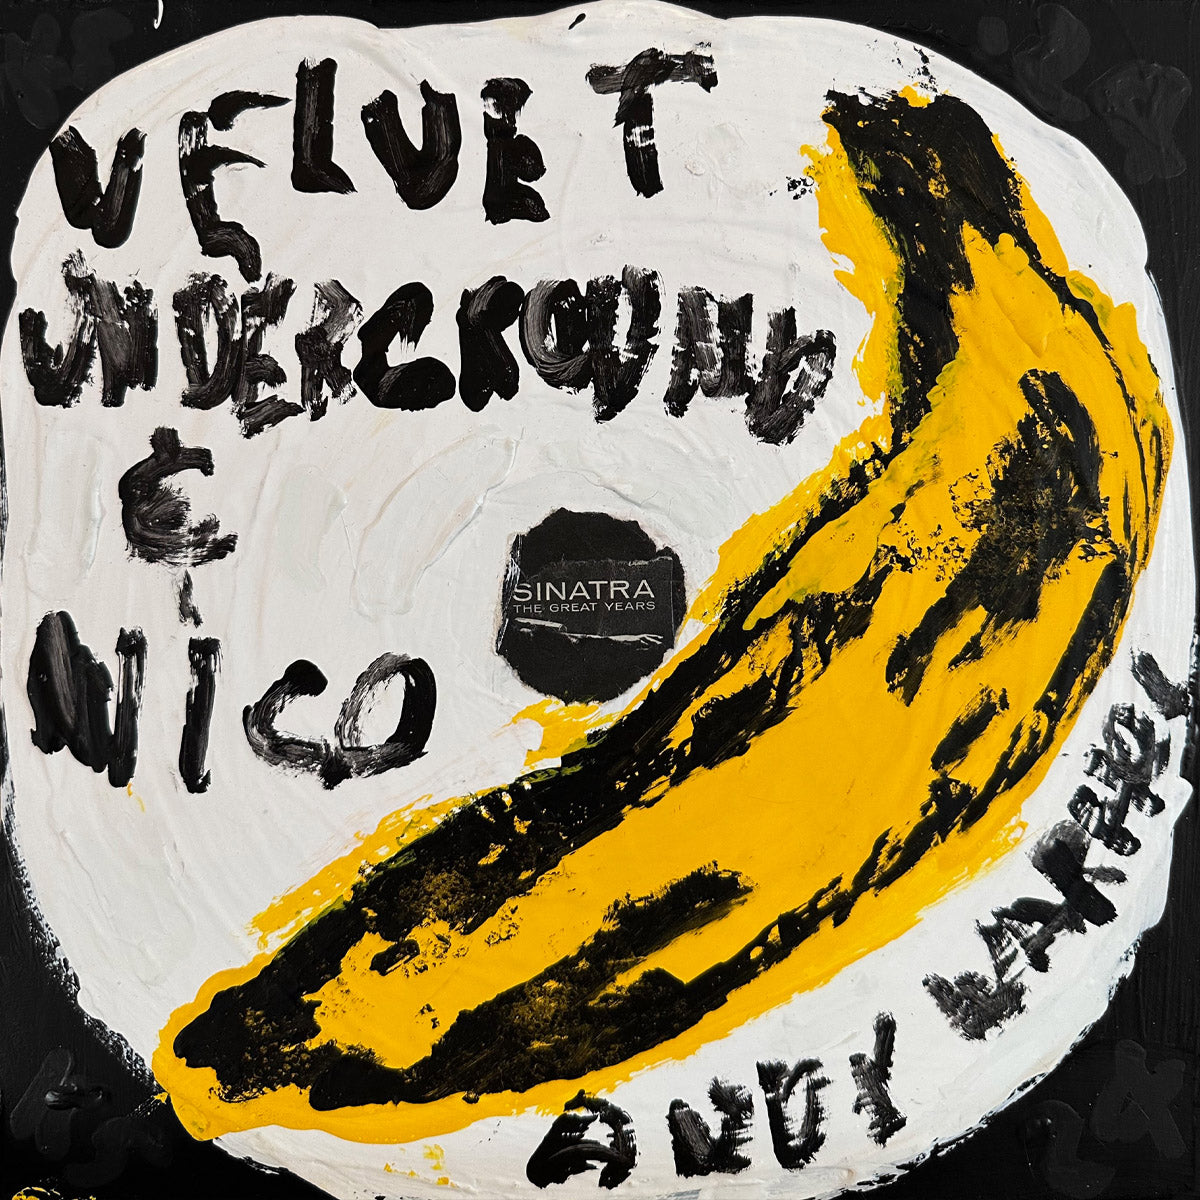 Velvet Underground and Nico Kerry Smith